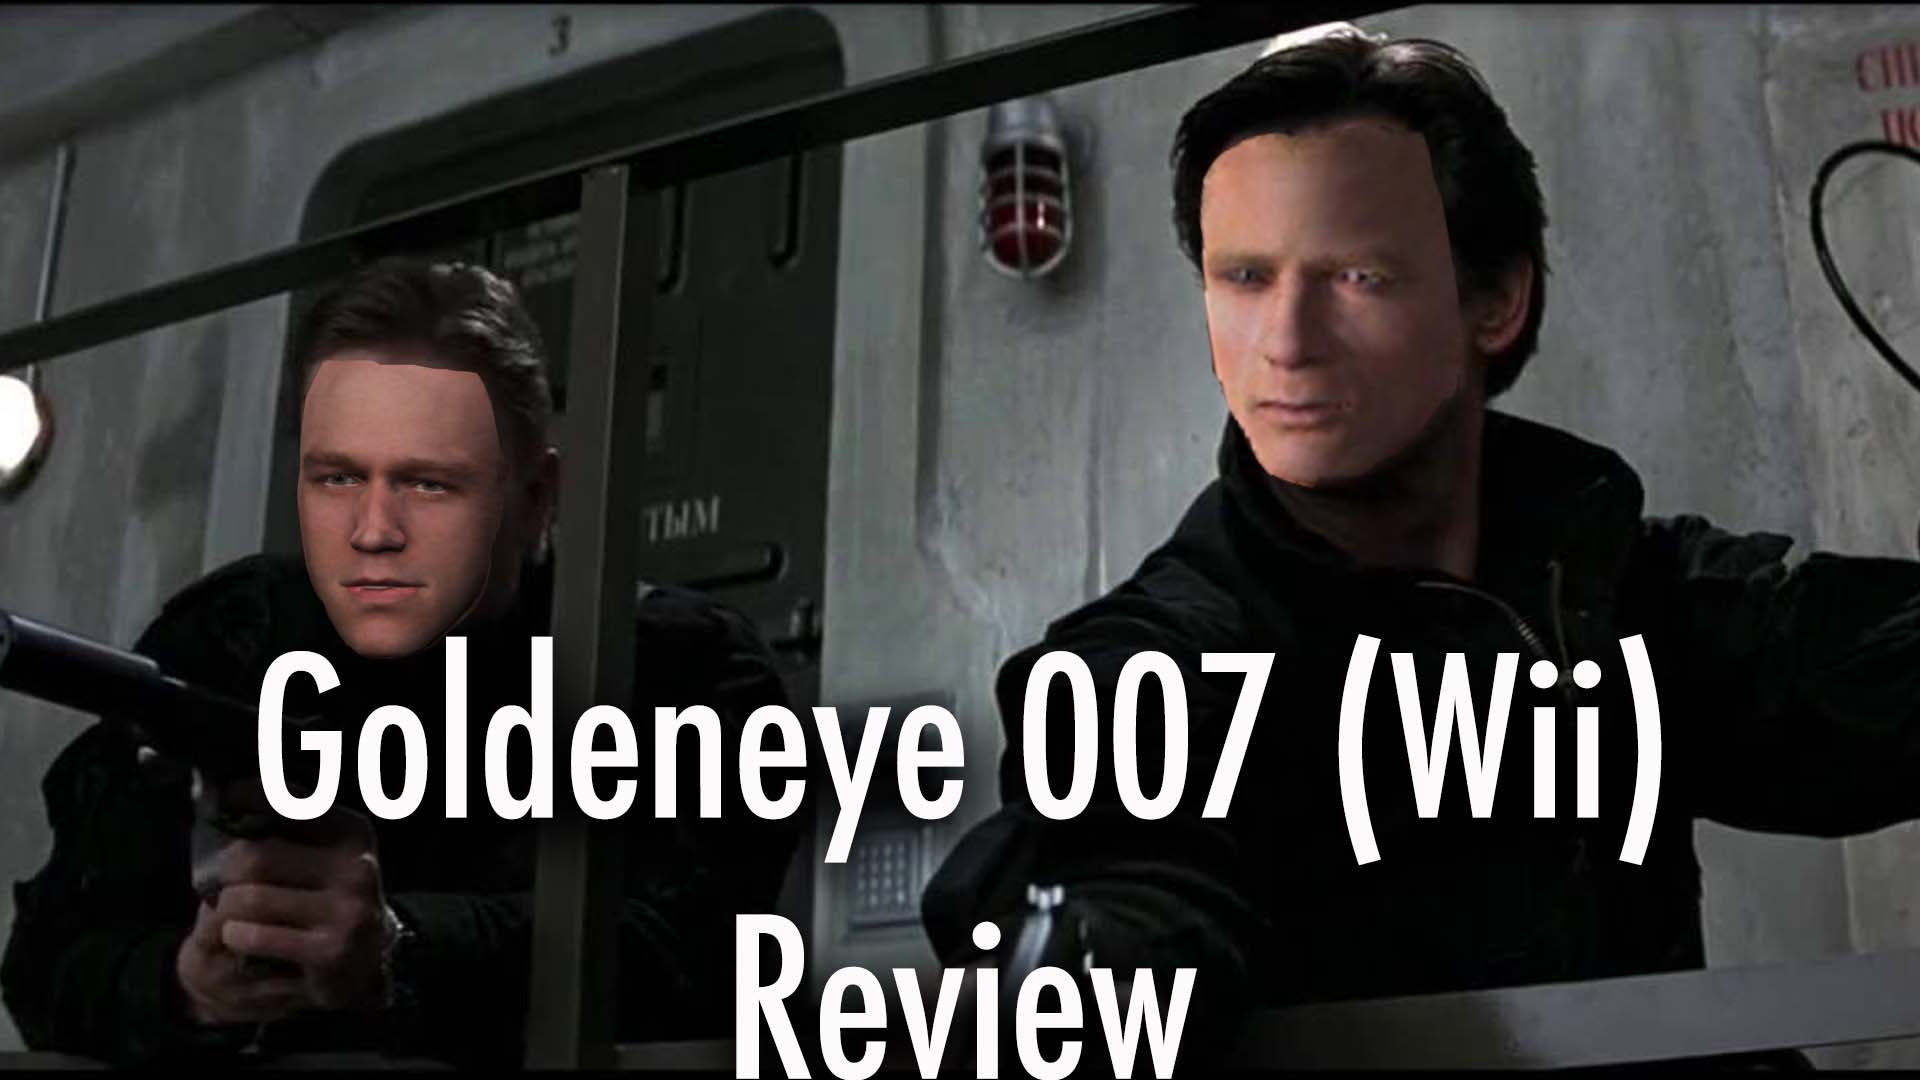 GoldenEye 007 Reloaded (Game) - Giant Bomb